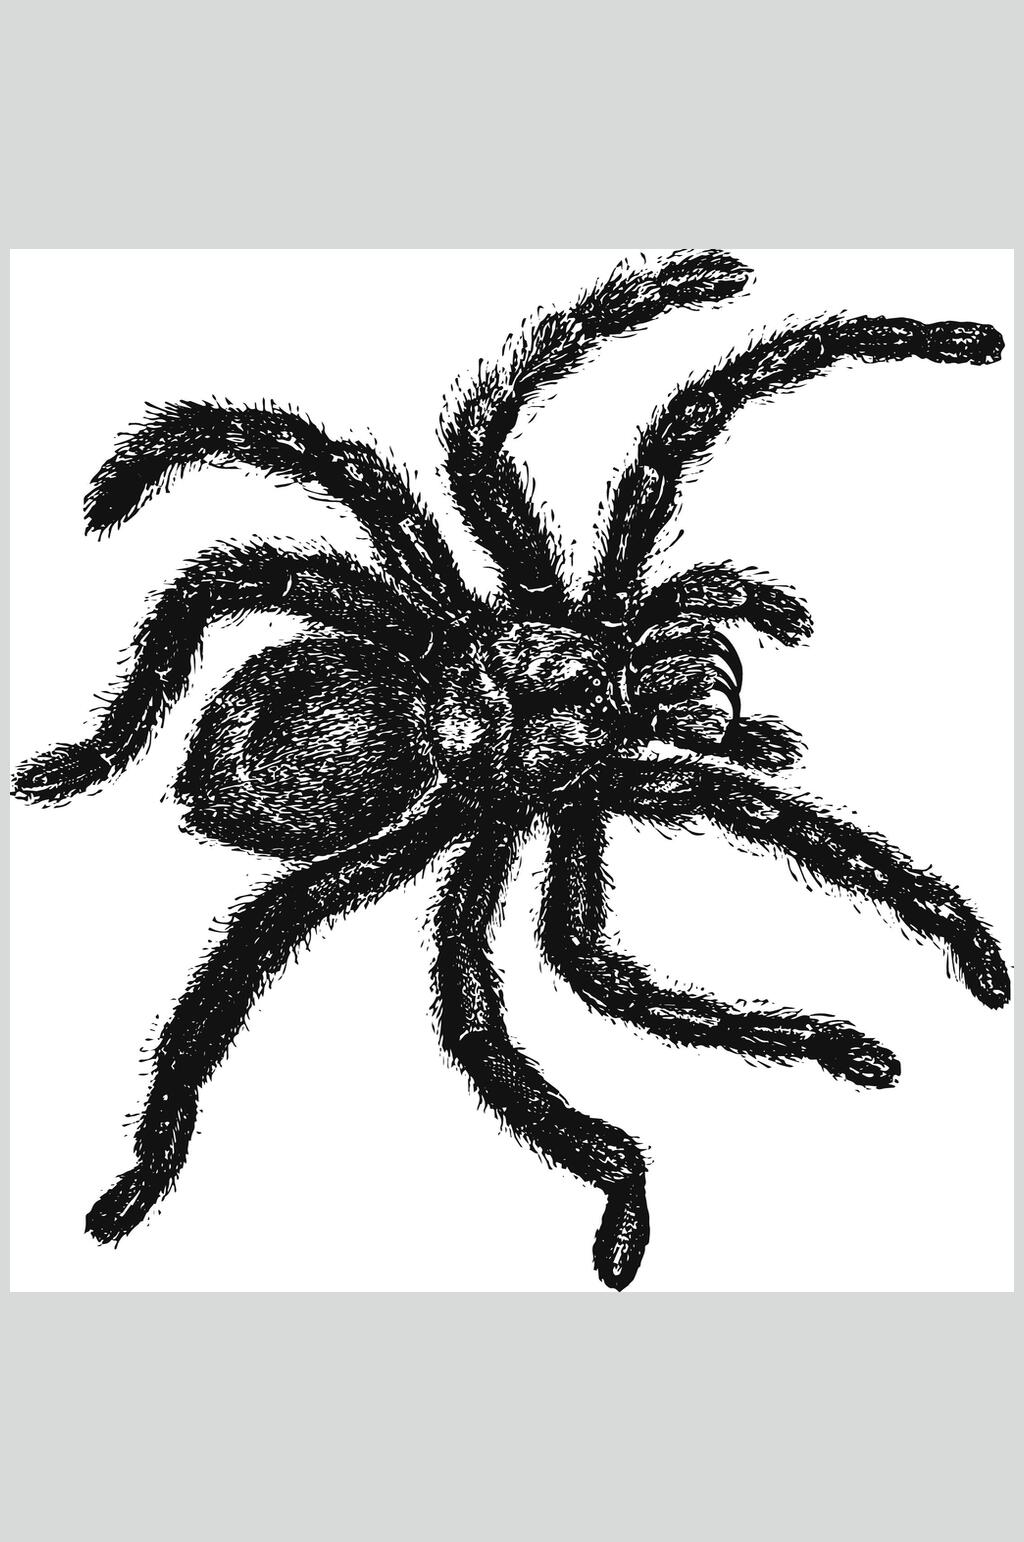 黑色蜘蛛野生动物昆虫手绘素材